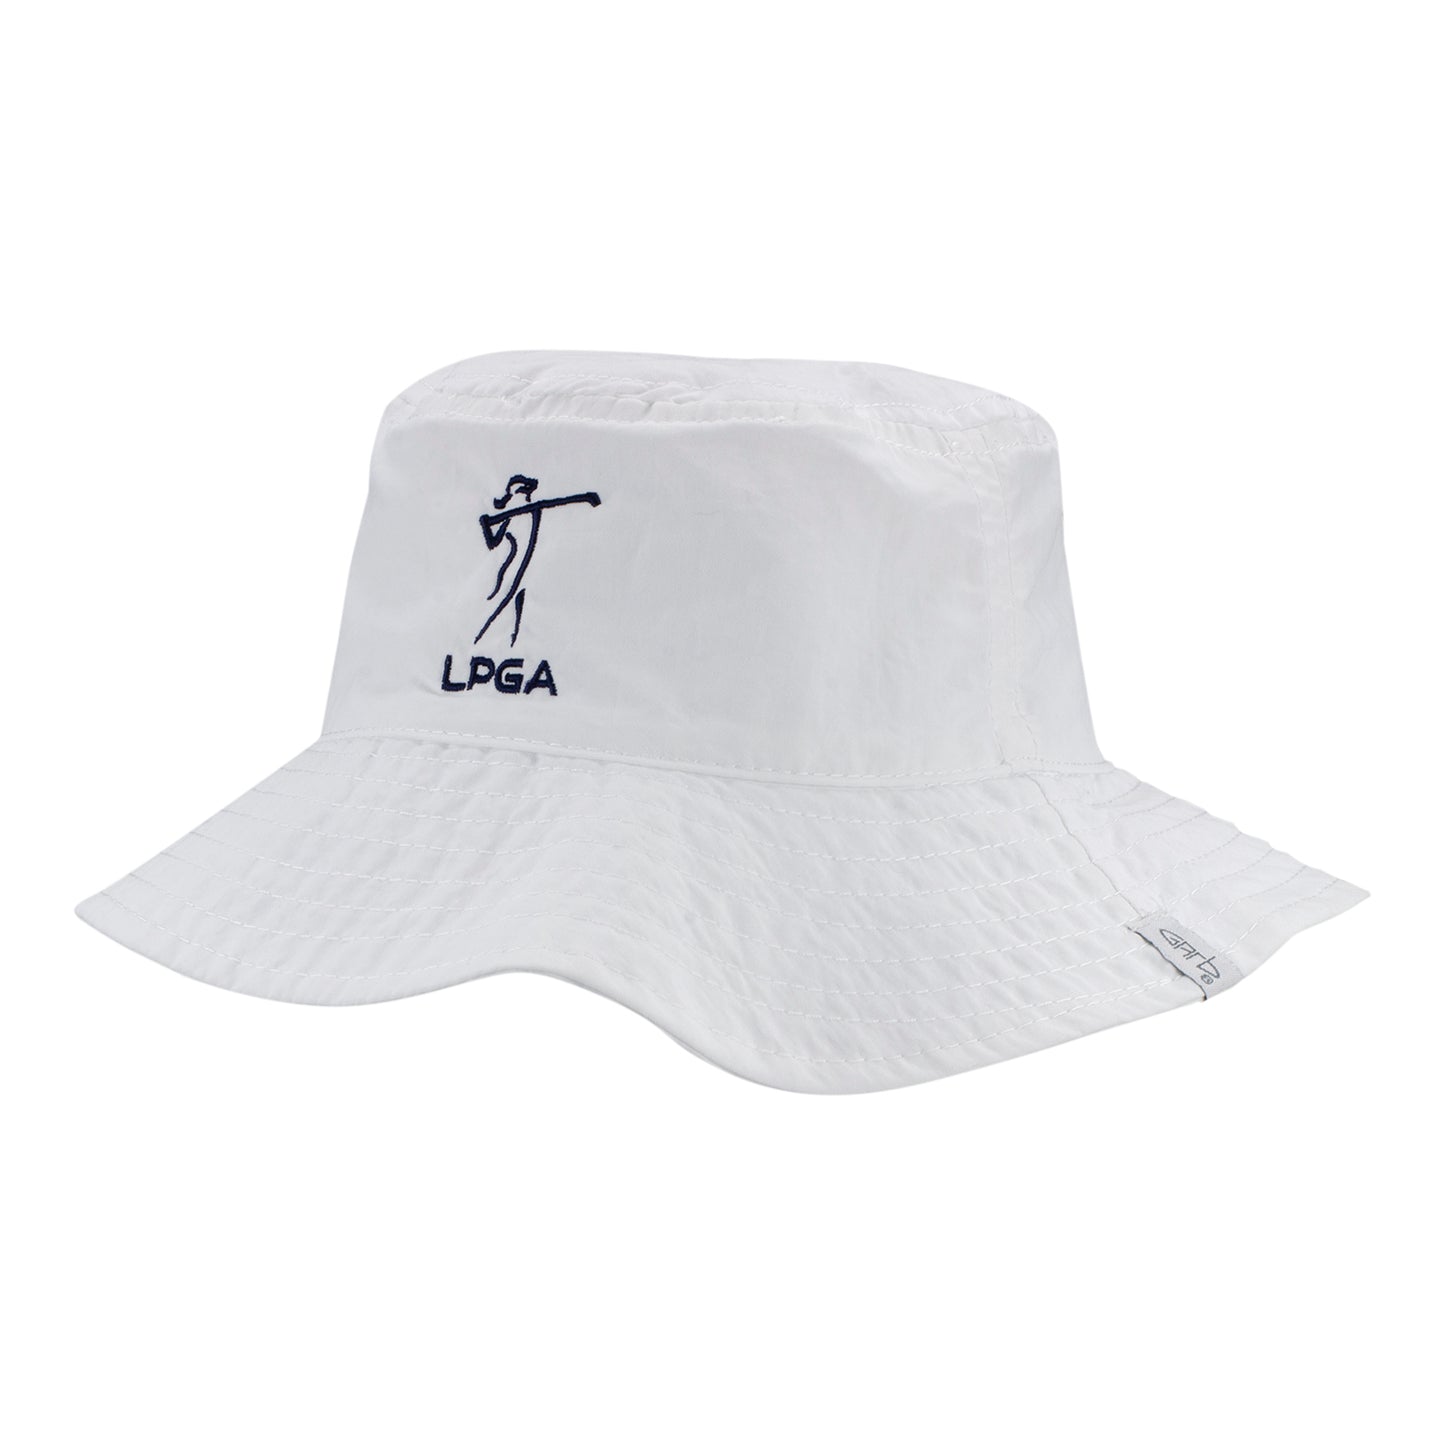 Garb 2023 LPGA Kennedy Infant Bonnet in White - Angled Left Side View